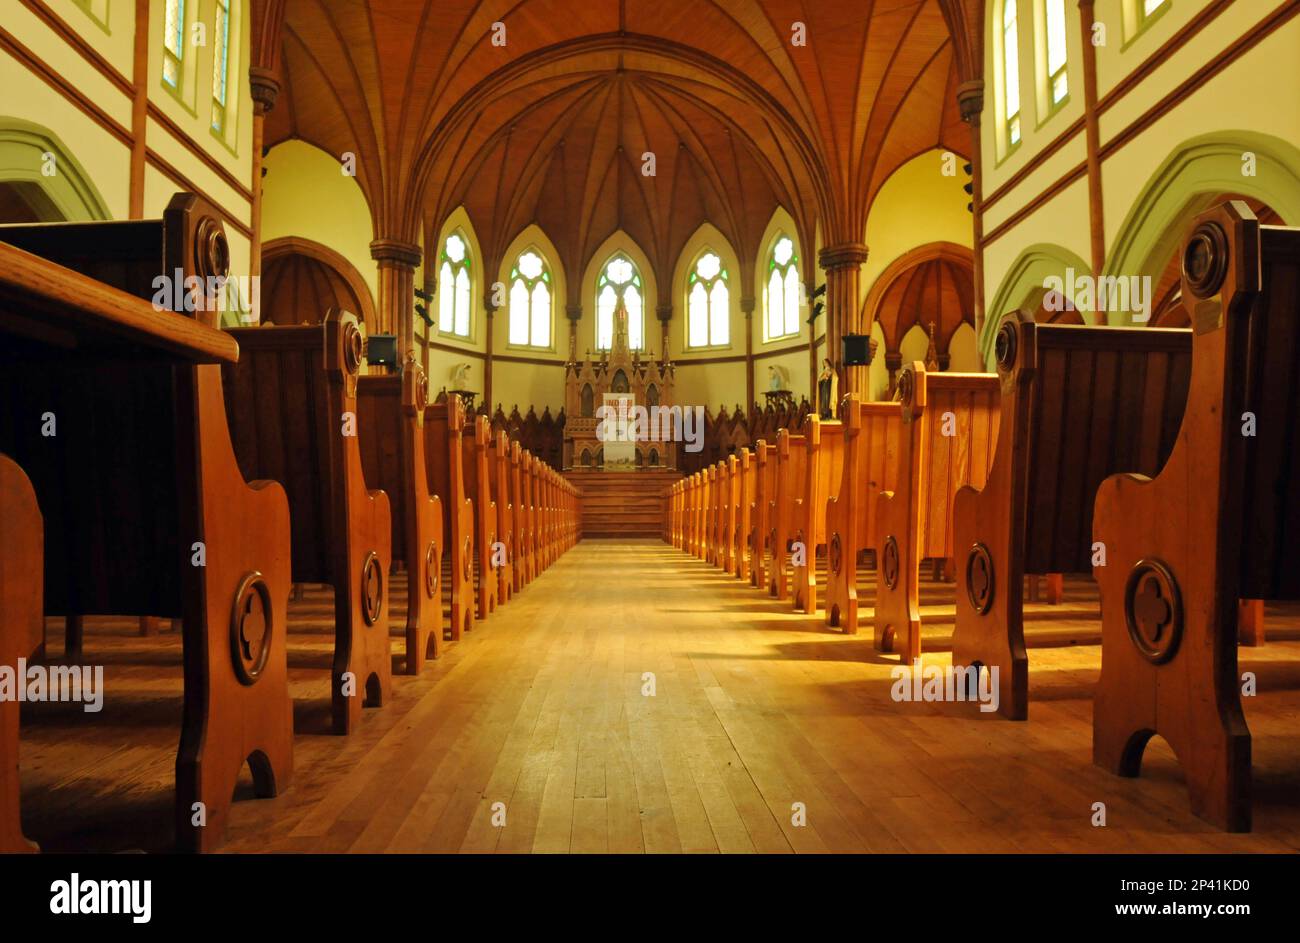 Des ragoûts bordent l'intérieur du monument St. Mary's Church à Indian River, Î.-P.-É. L'église de 1902 abrite maintenant le festival de musique Under the Spire. Banque D'Images